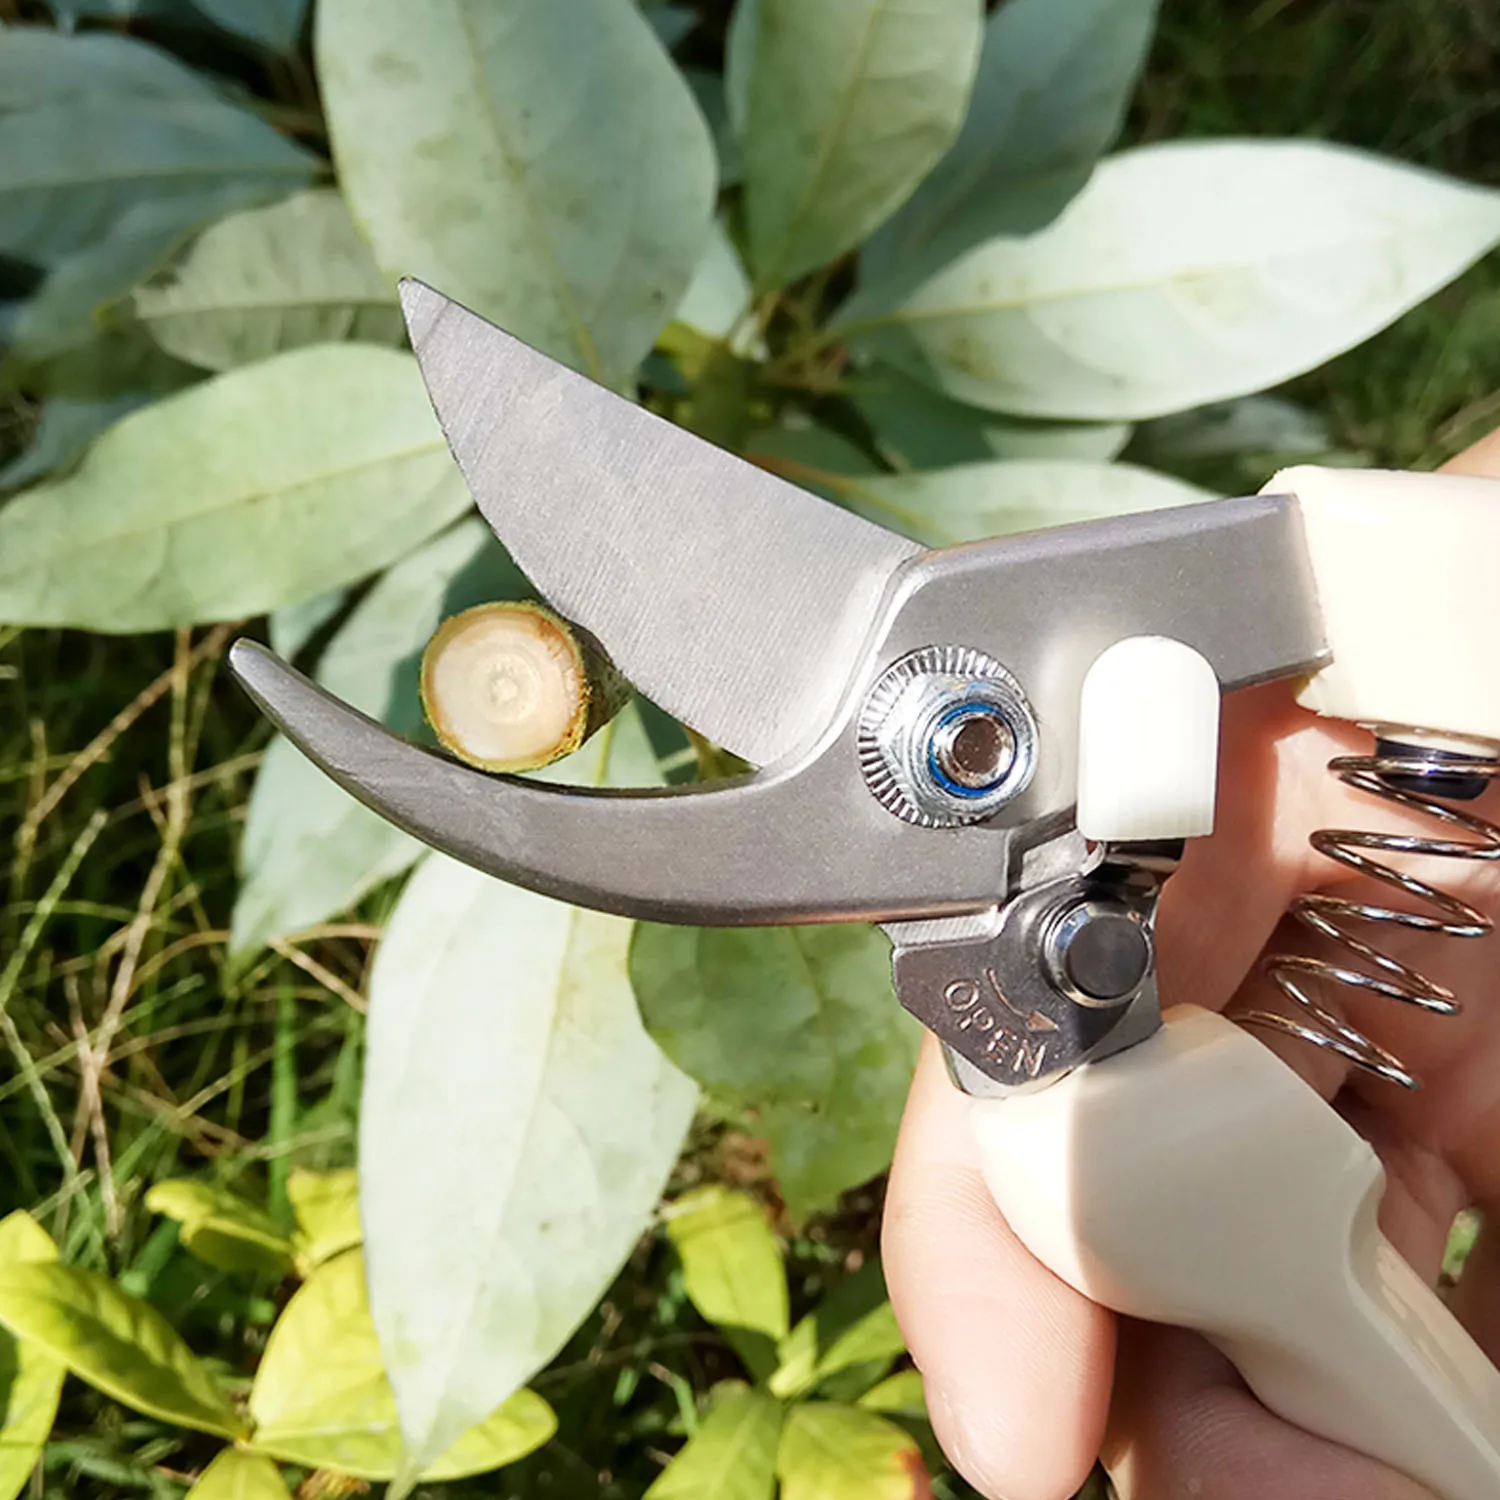 Tanio Behogar profesjonalne nożyczki do przycinania ogrodu ze stali nierdzewnej sklep